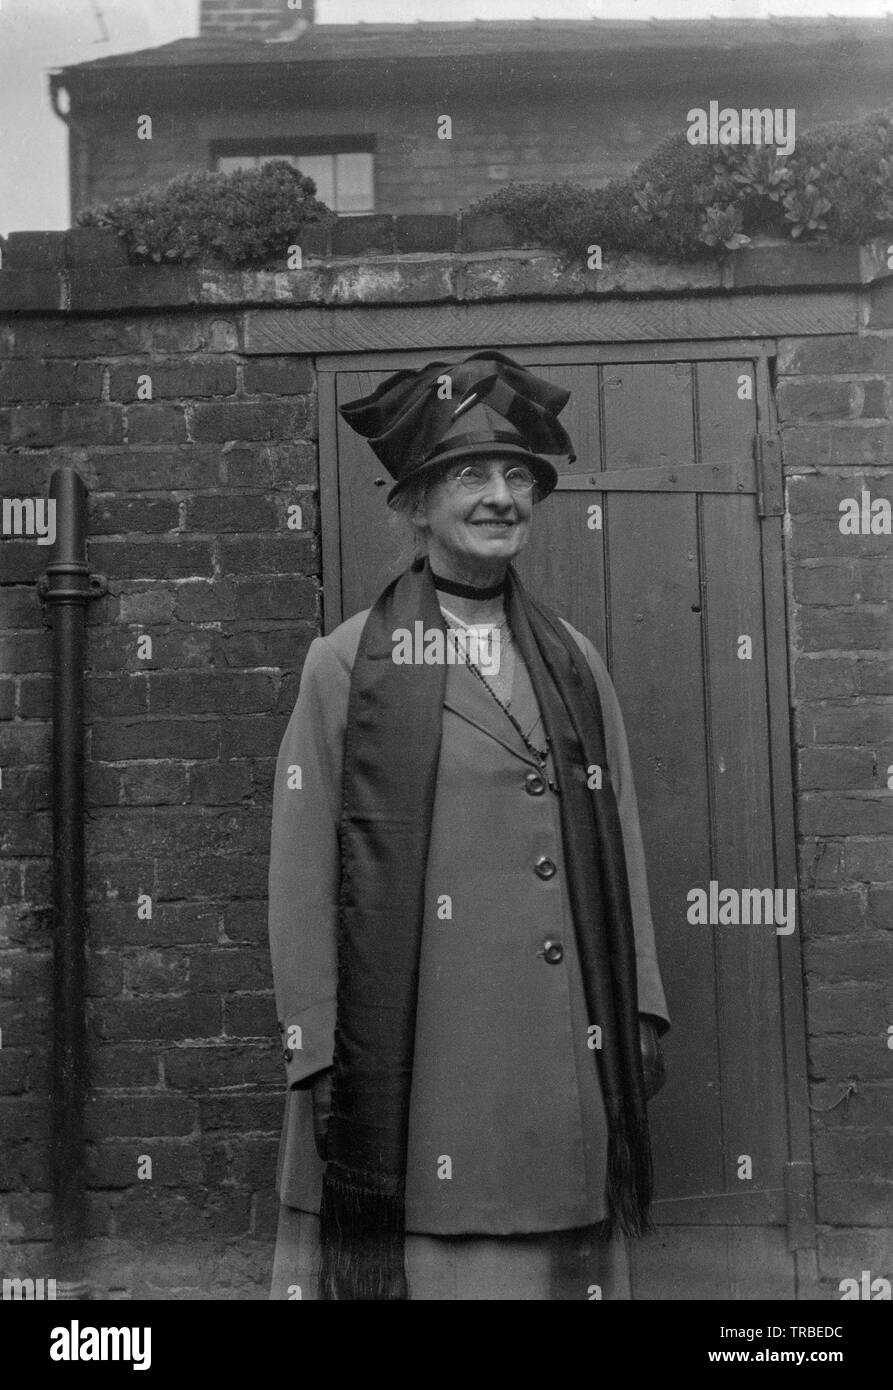 Un début du xxe siècle vintage noir et blanc photographie d'une femme d'âge moyen, vêtu de son mieux les vêtements et chapeau. Photographie prise à l'extérieur de l'arrière d'une propriété en Angleterre. Banque D'Images